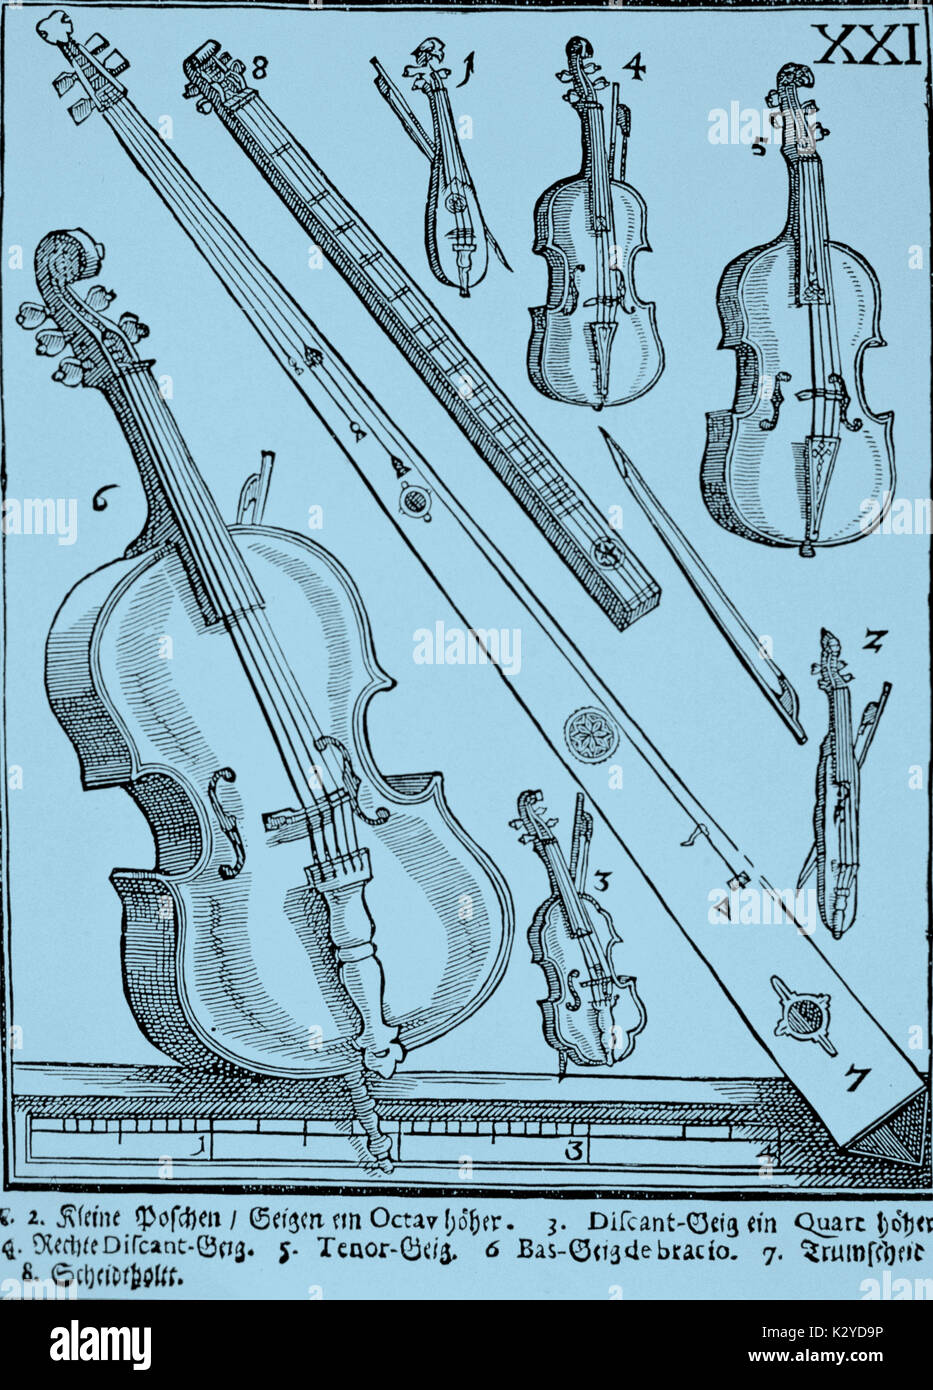 Les familles d'instruments - Les cordes frottées - Les violons